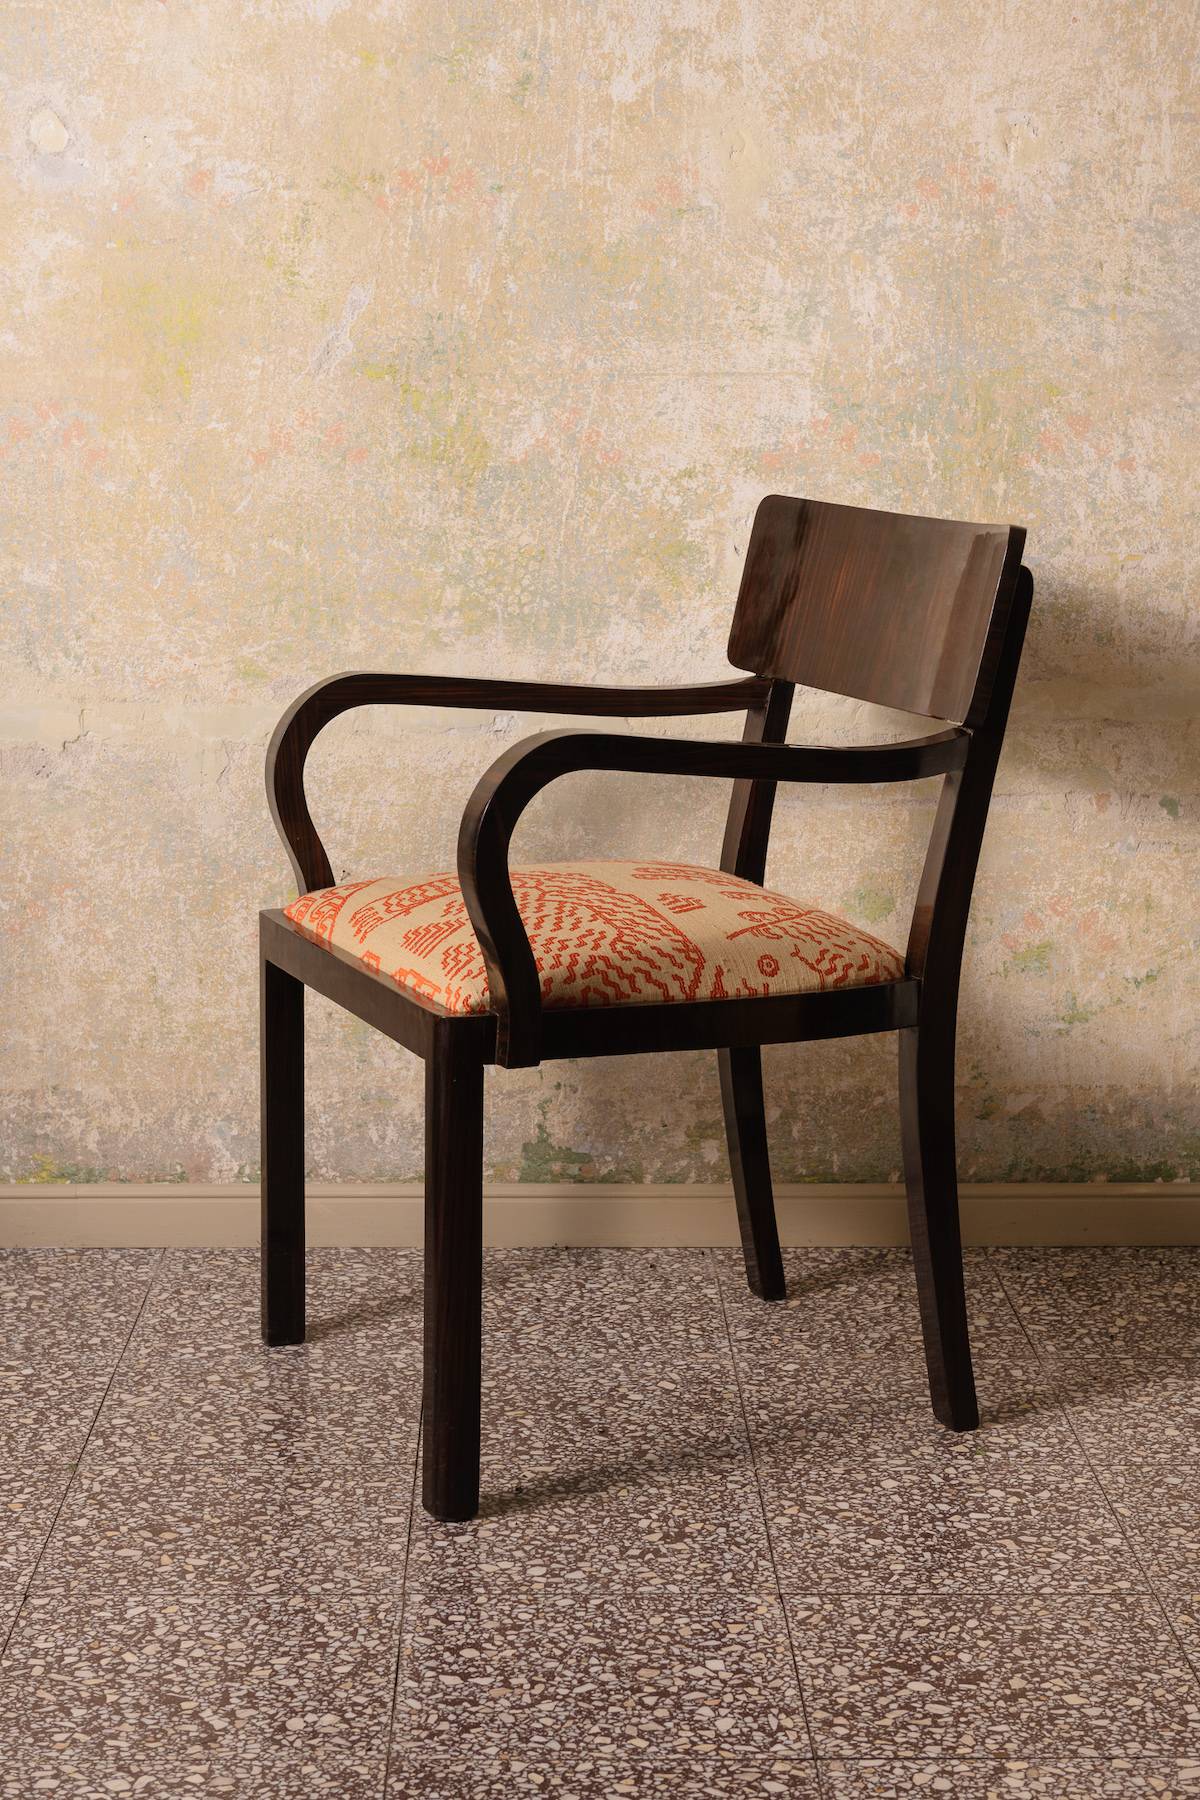 Krzesło palisander, lata 30-te, 6 200 zł (Fot. materiały prasowe)